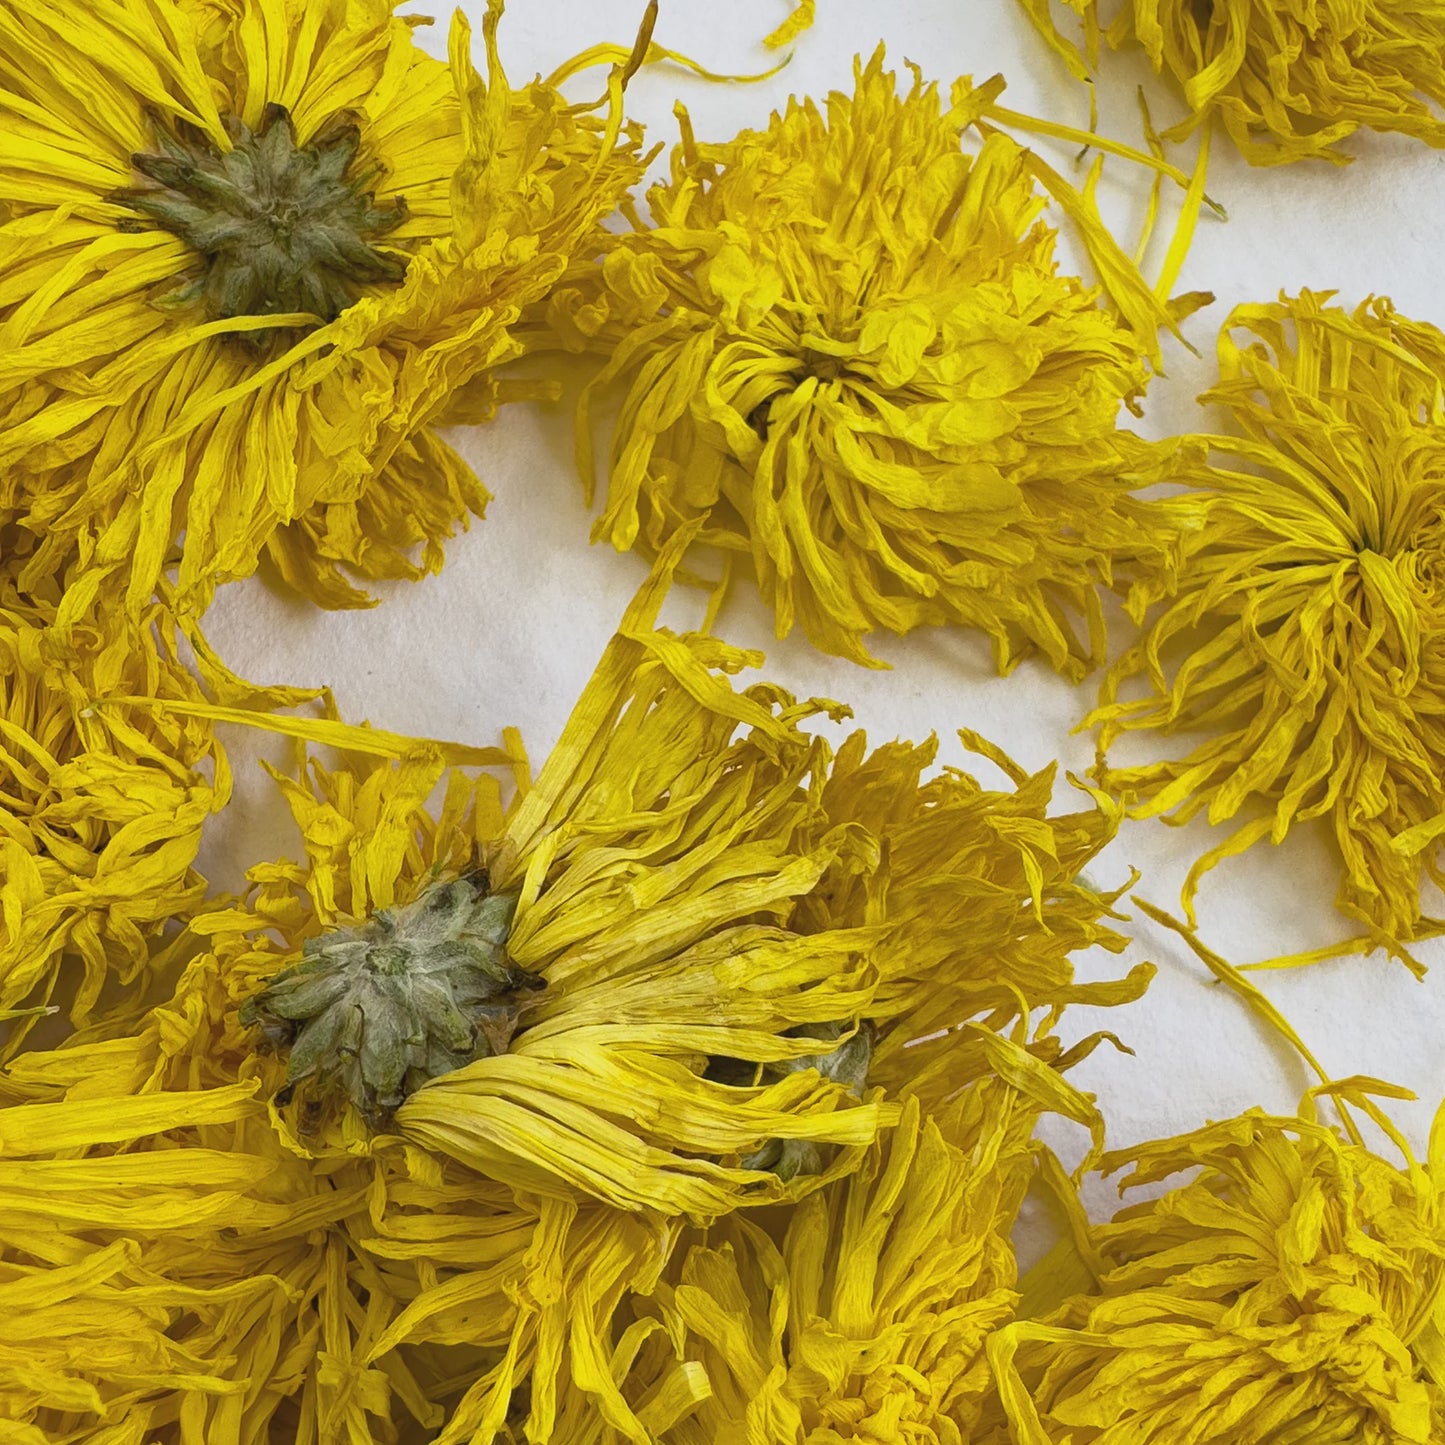 Delightful Dried Flowers | Flawless Filiform